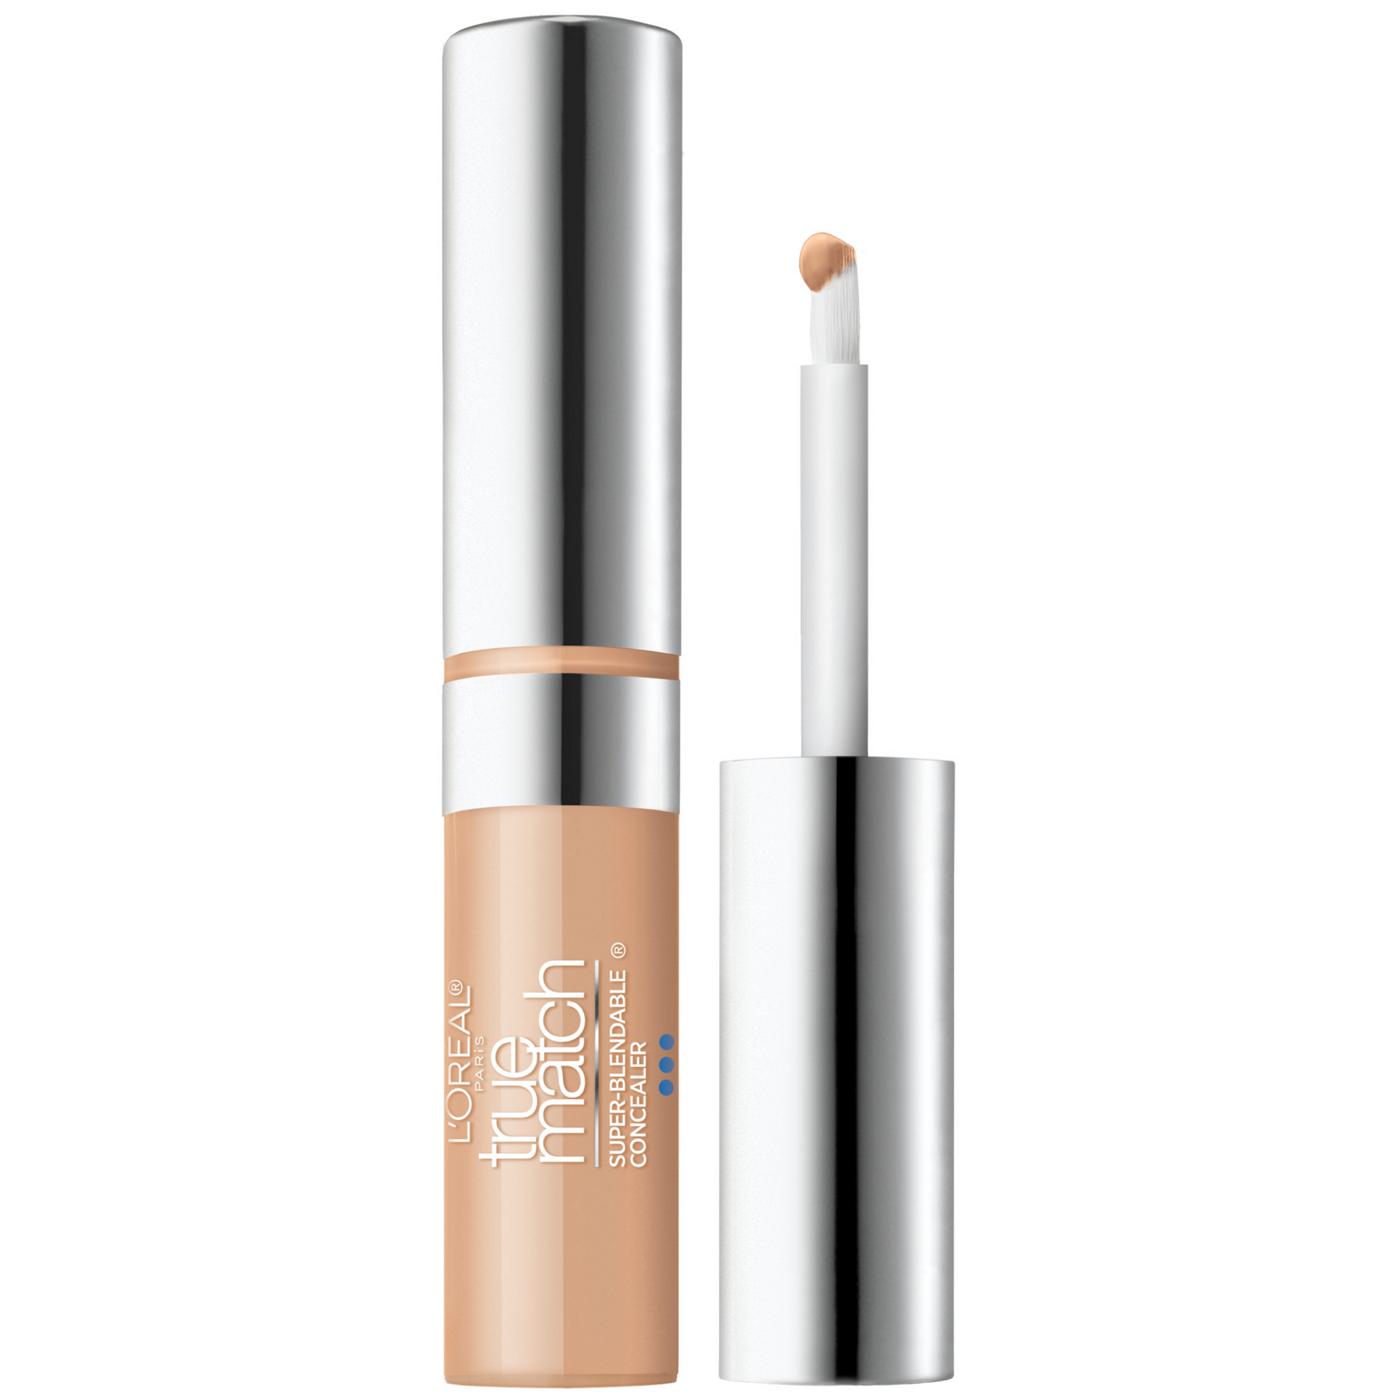 L'Oréal Paris True Match Super-Blendable Concealer - Light Medium Cool; image 1 of 2